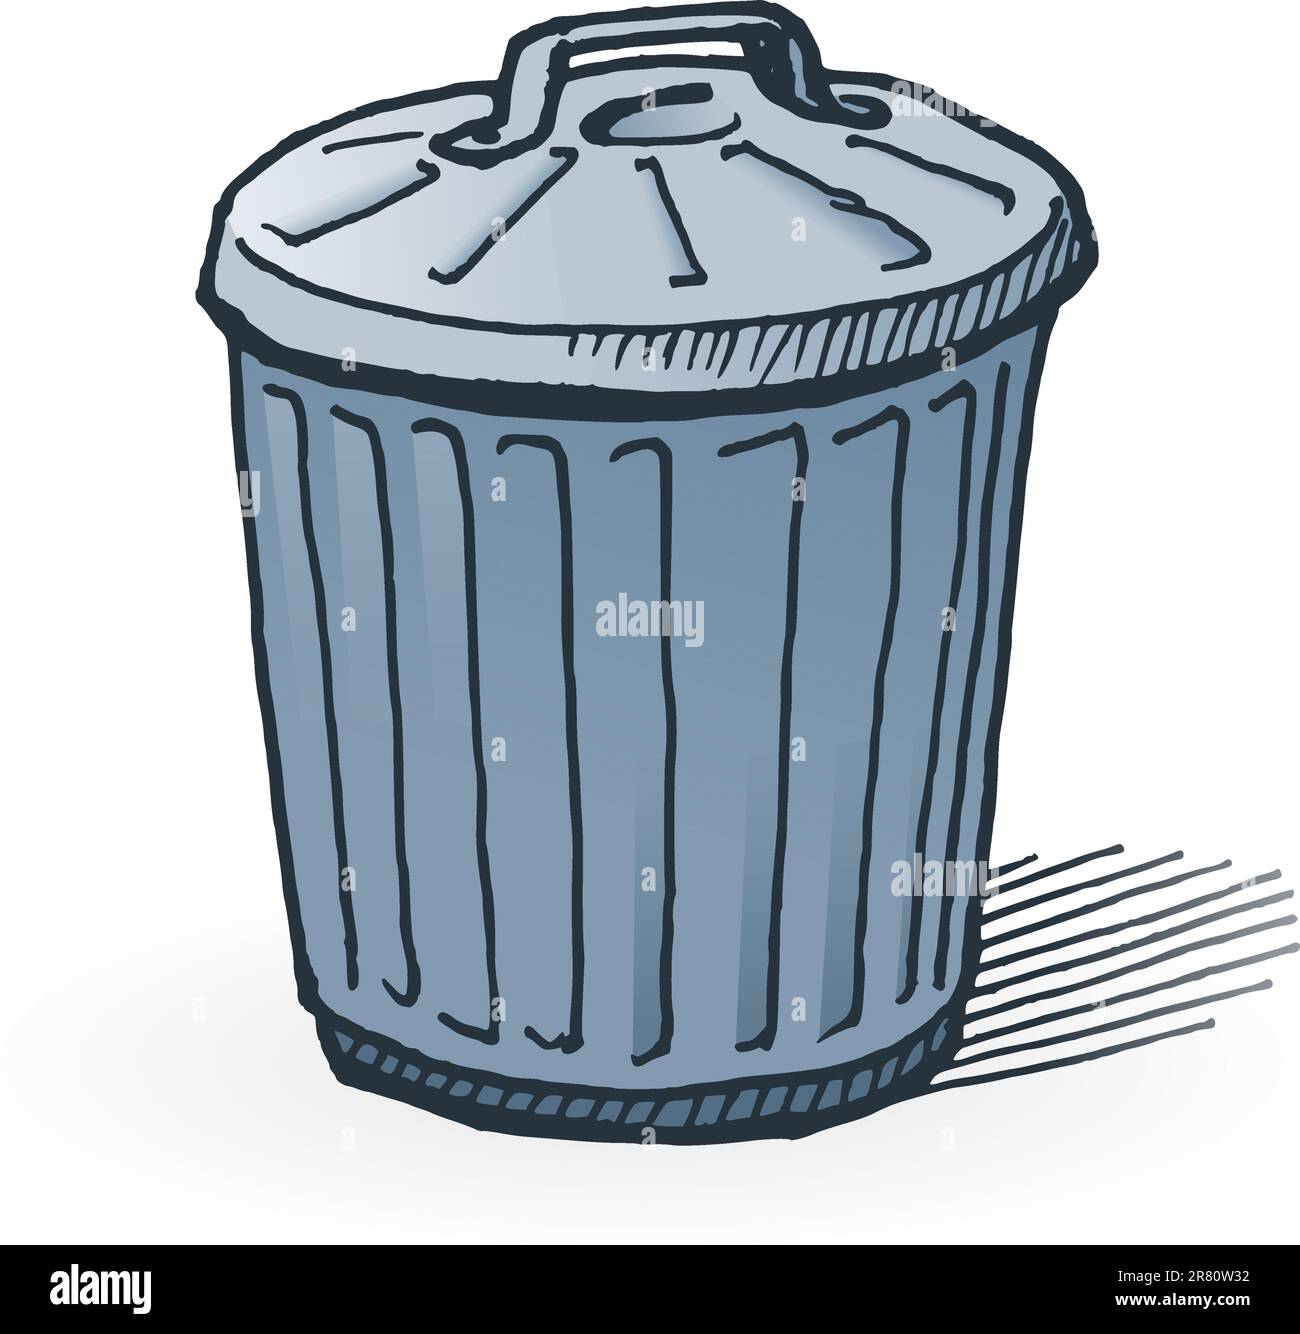 Handmade illustration of garbage bin on white background Stock Vector